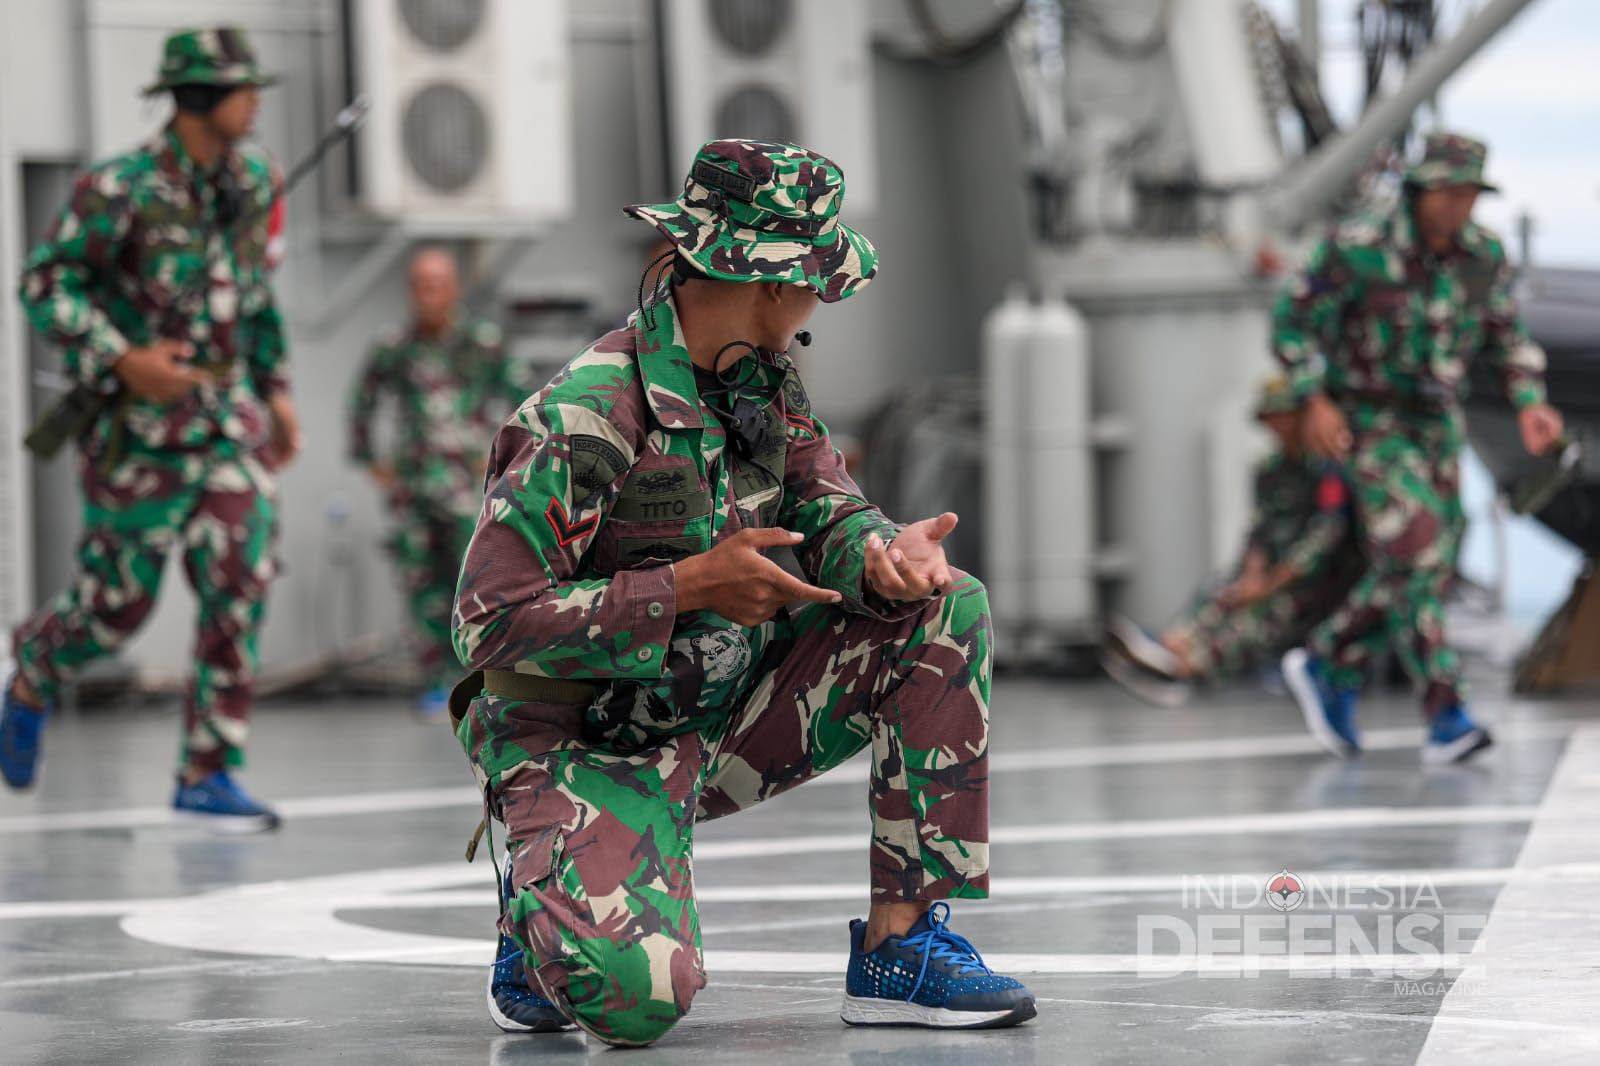 Marinir TNI AL Lakukan Persiapan Jelang Puncak Latgabma Ausindo AAJEK